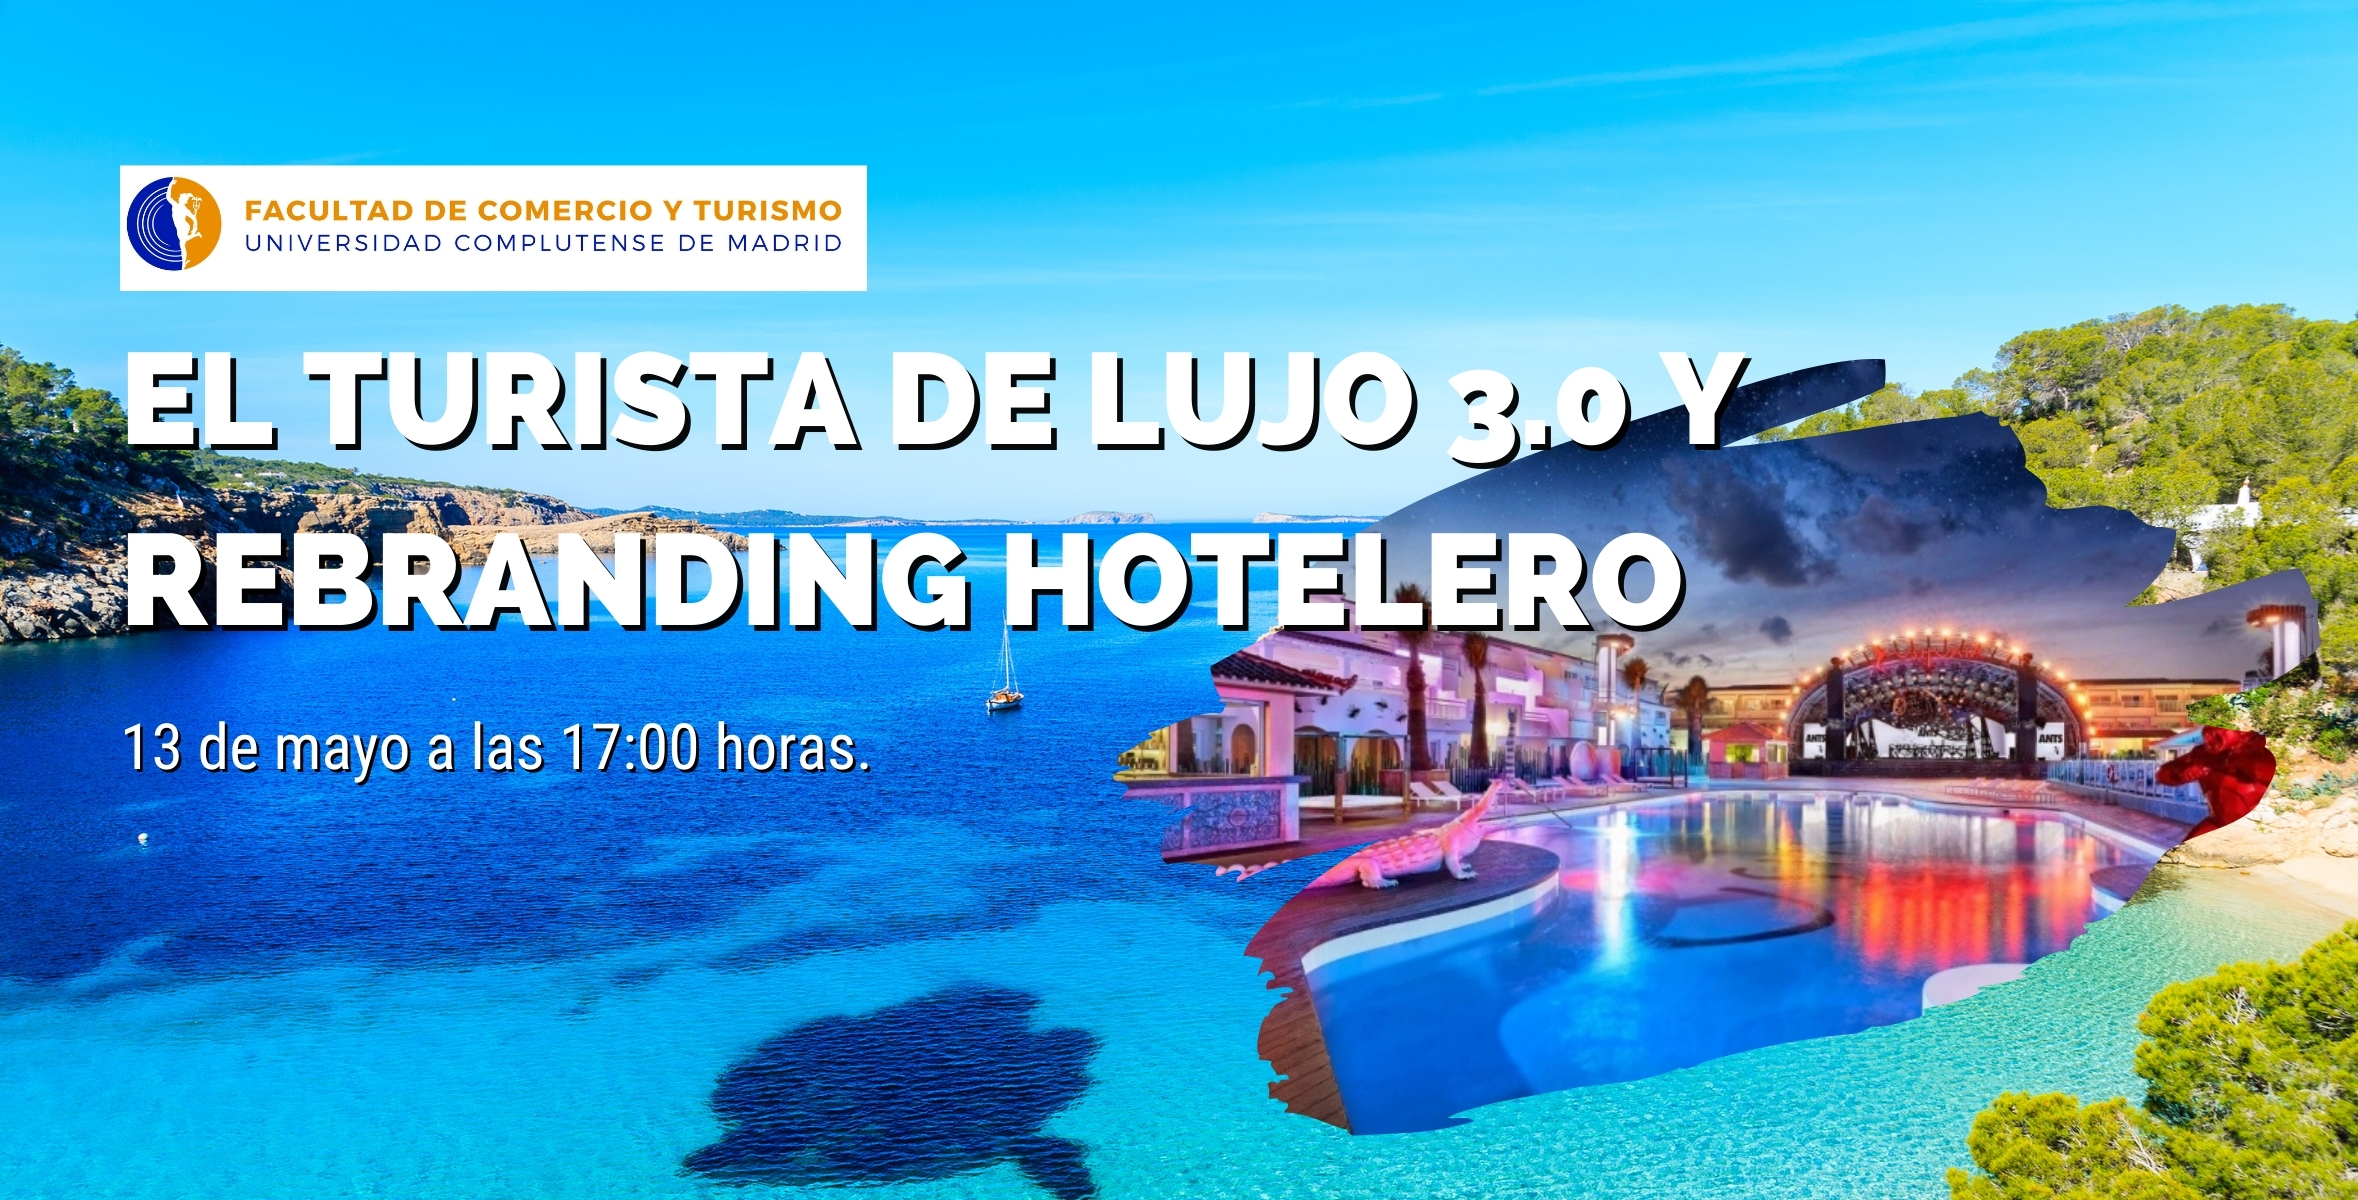 SEMINARIO: El turista de lujo 3.0 y rebranding hotelero - 1